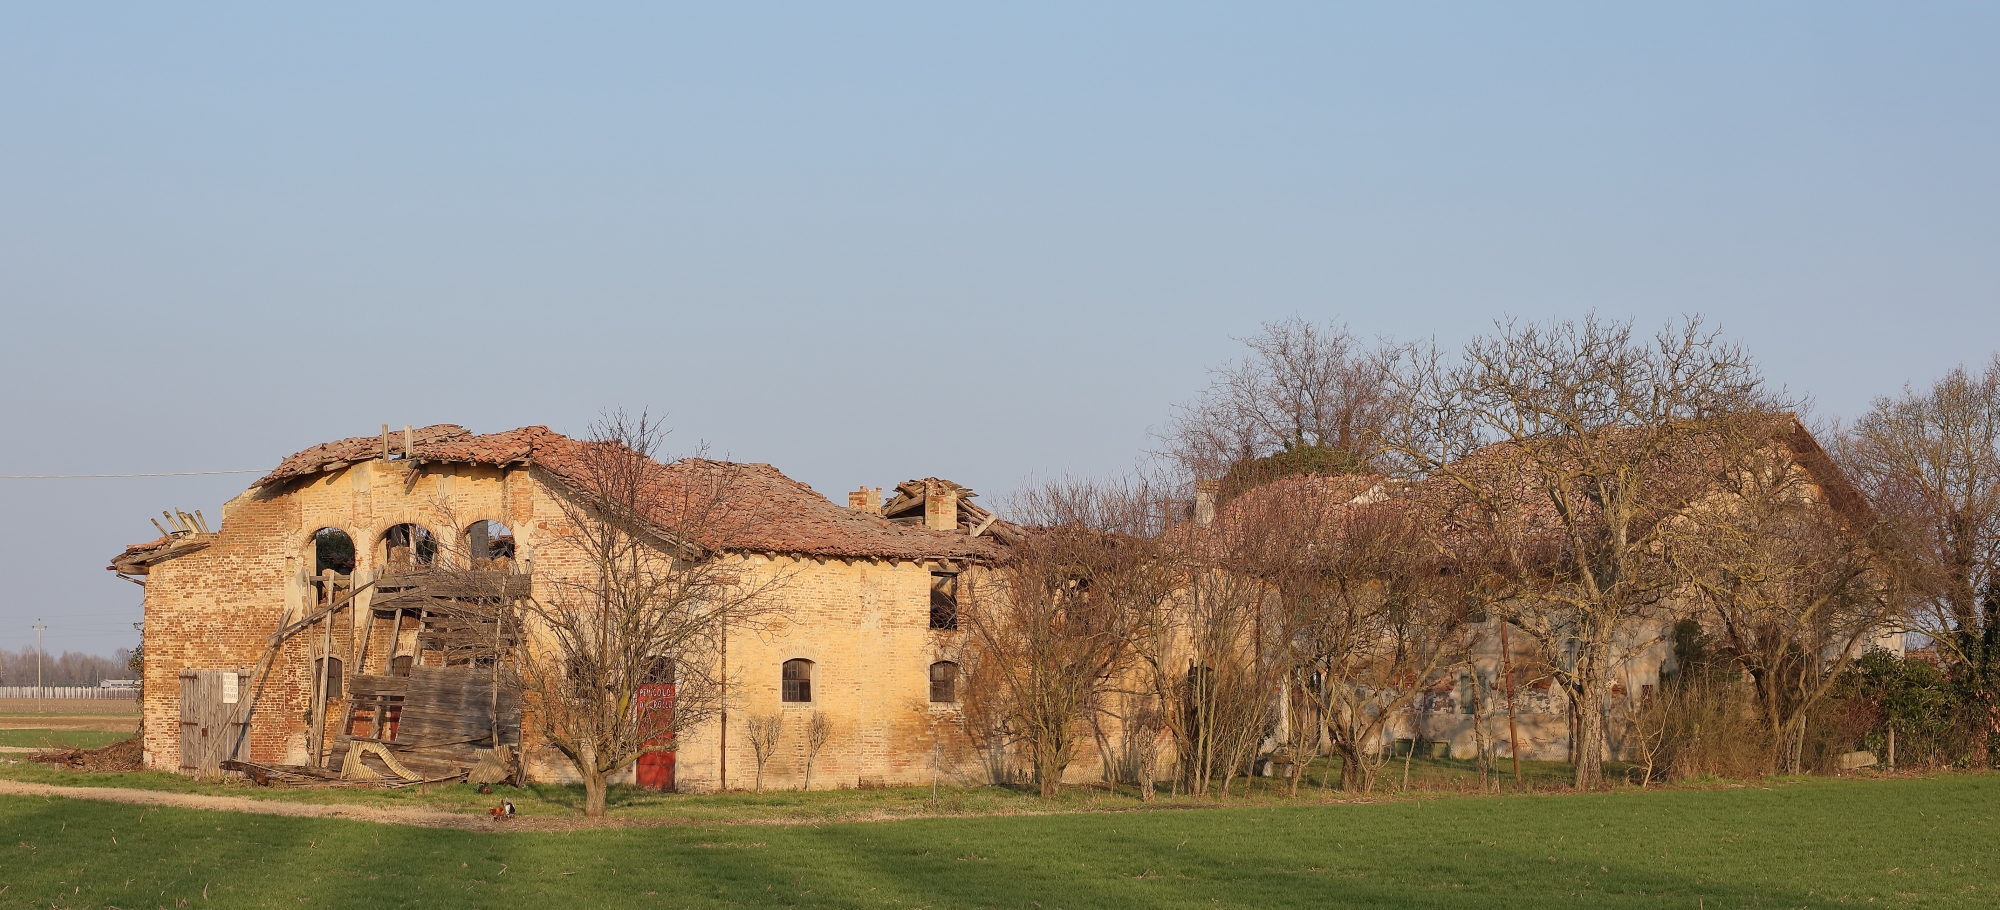 Municipality of San Pietro in Casale (Bo)....